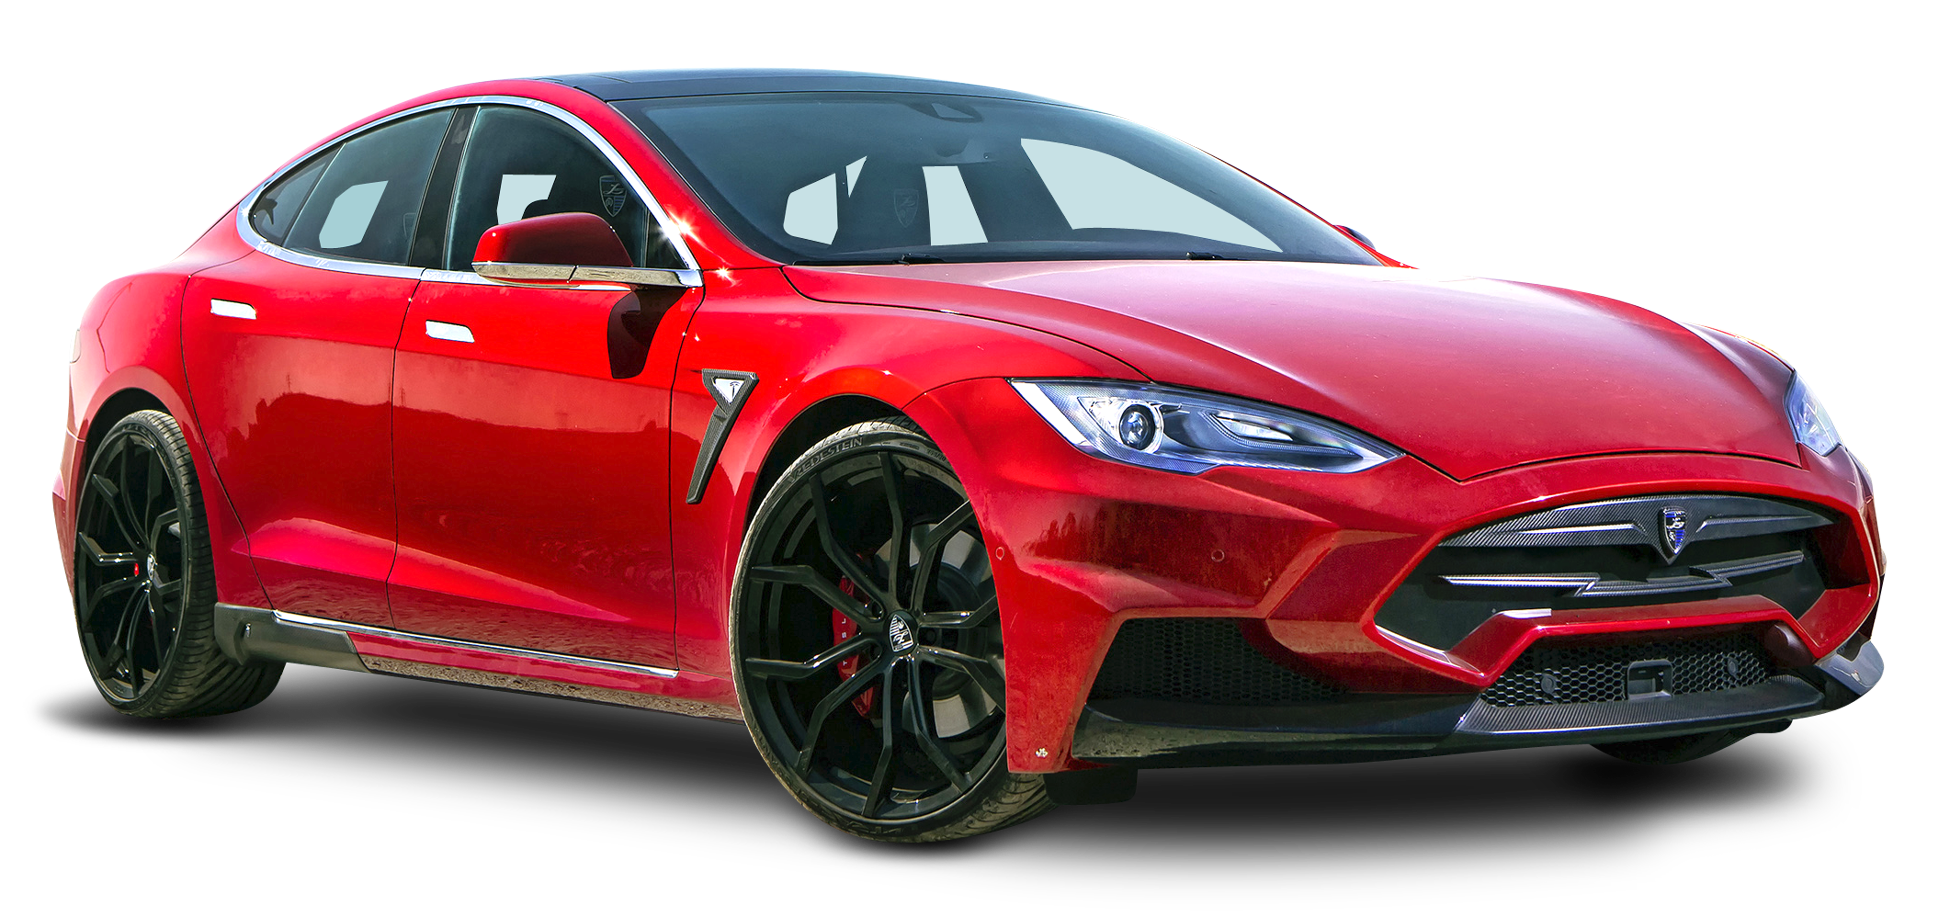 Red Tesla Model S Car PNG Image